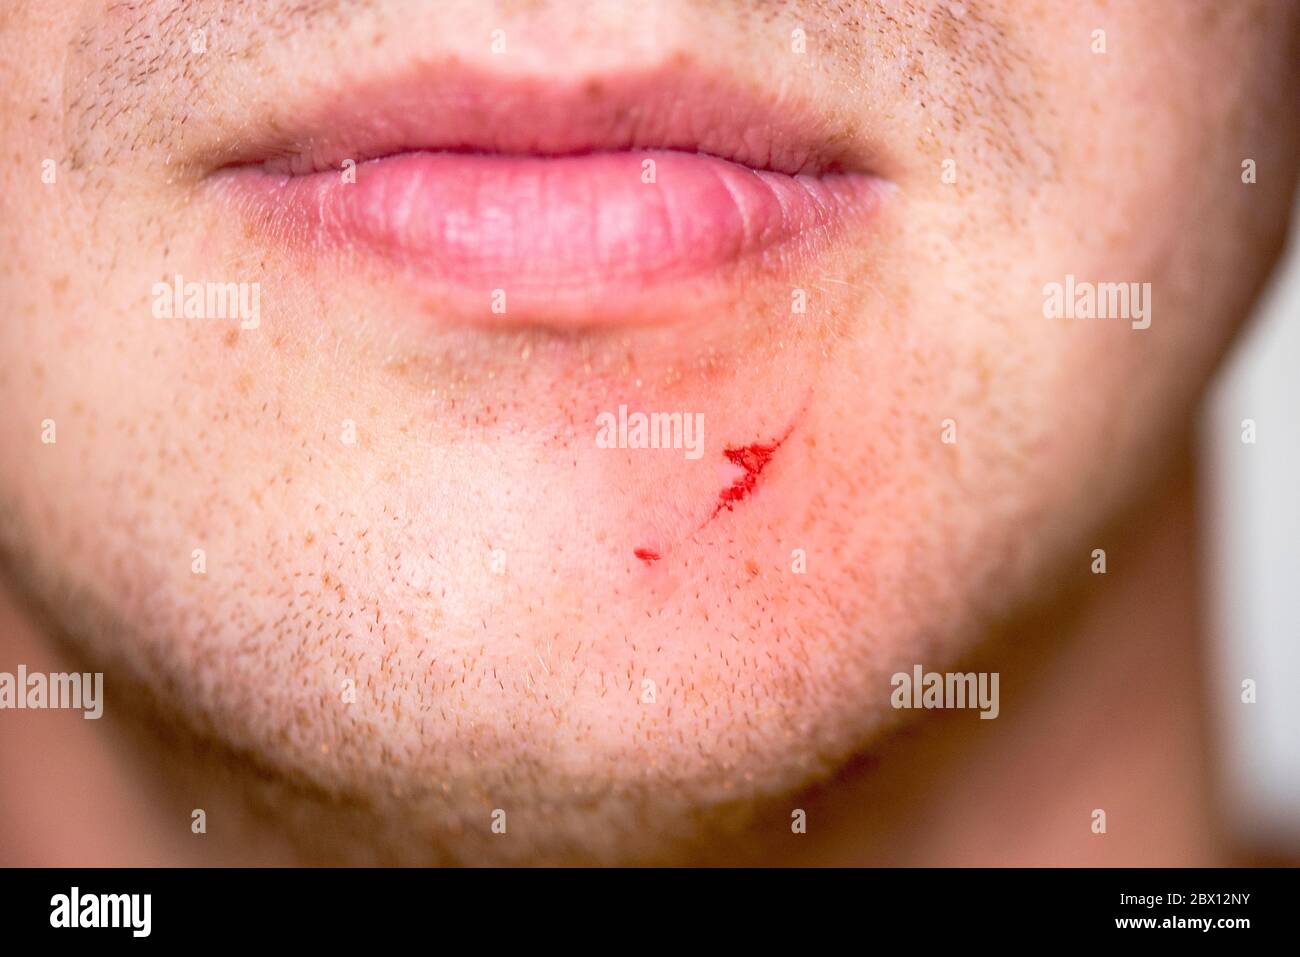 Echte kleine Wunde oder Schnitt auf der Haut, Wunde auf Gesicht des  Menschen, Nahaufnahme des Kinns Stockfotografie - Alamy